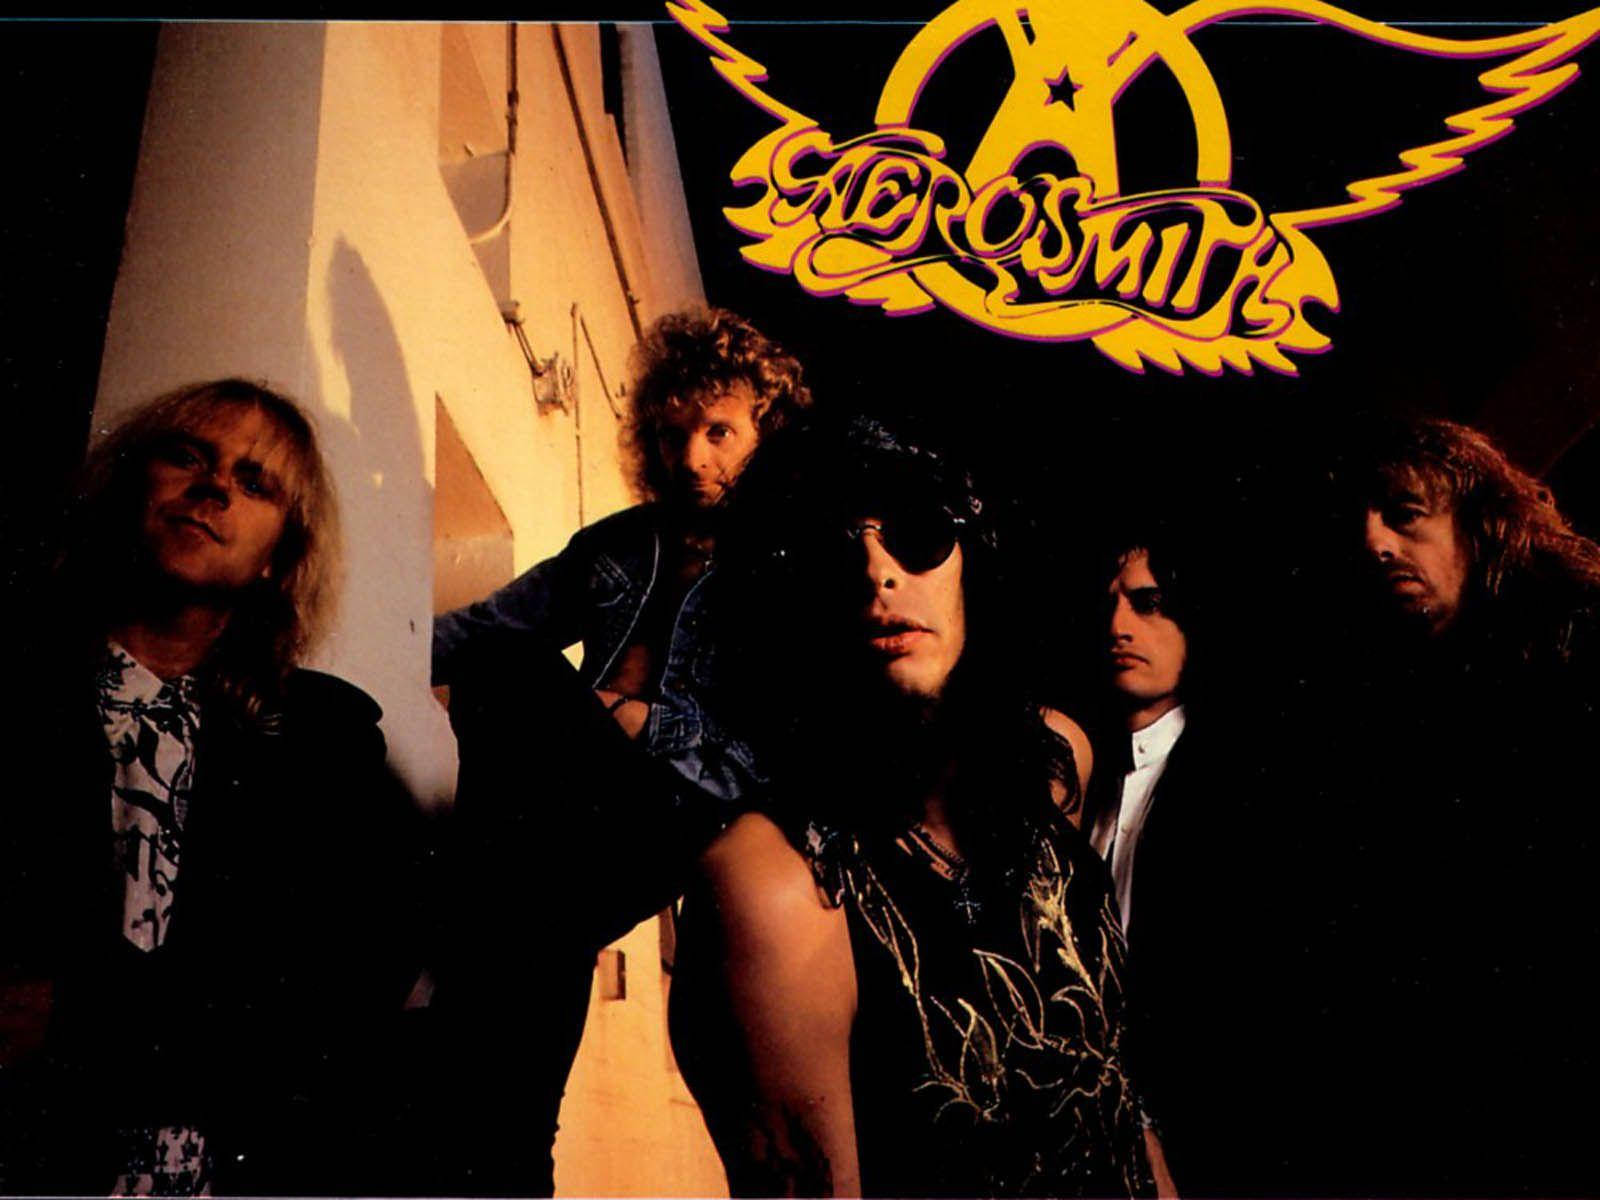 Aerosmithrockband - Mörk Estetik Wallpaper